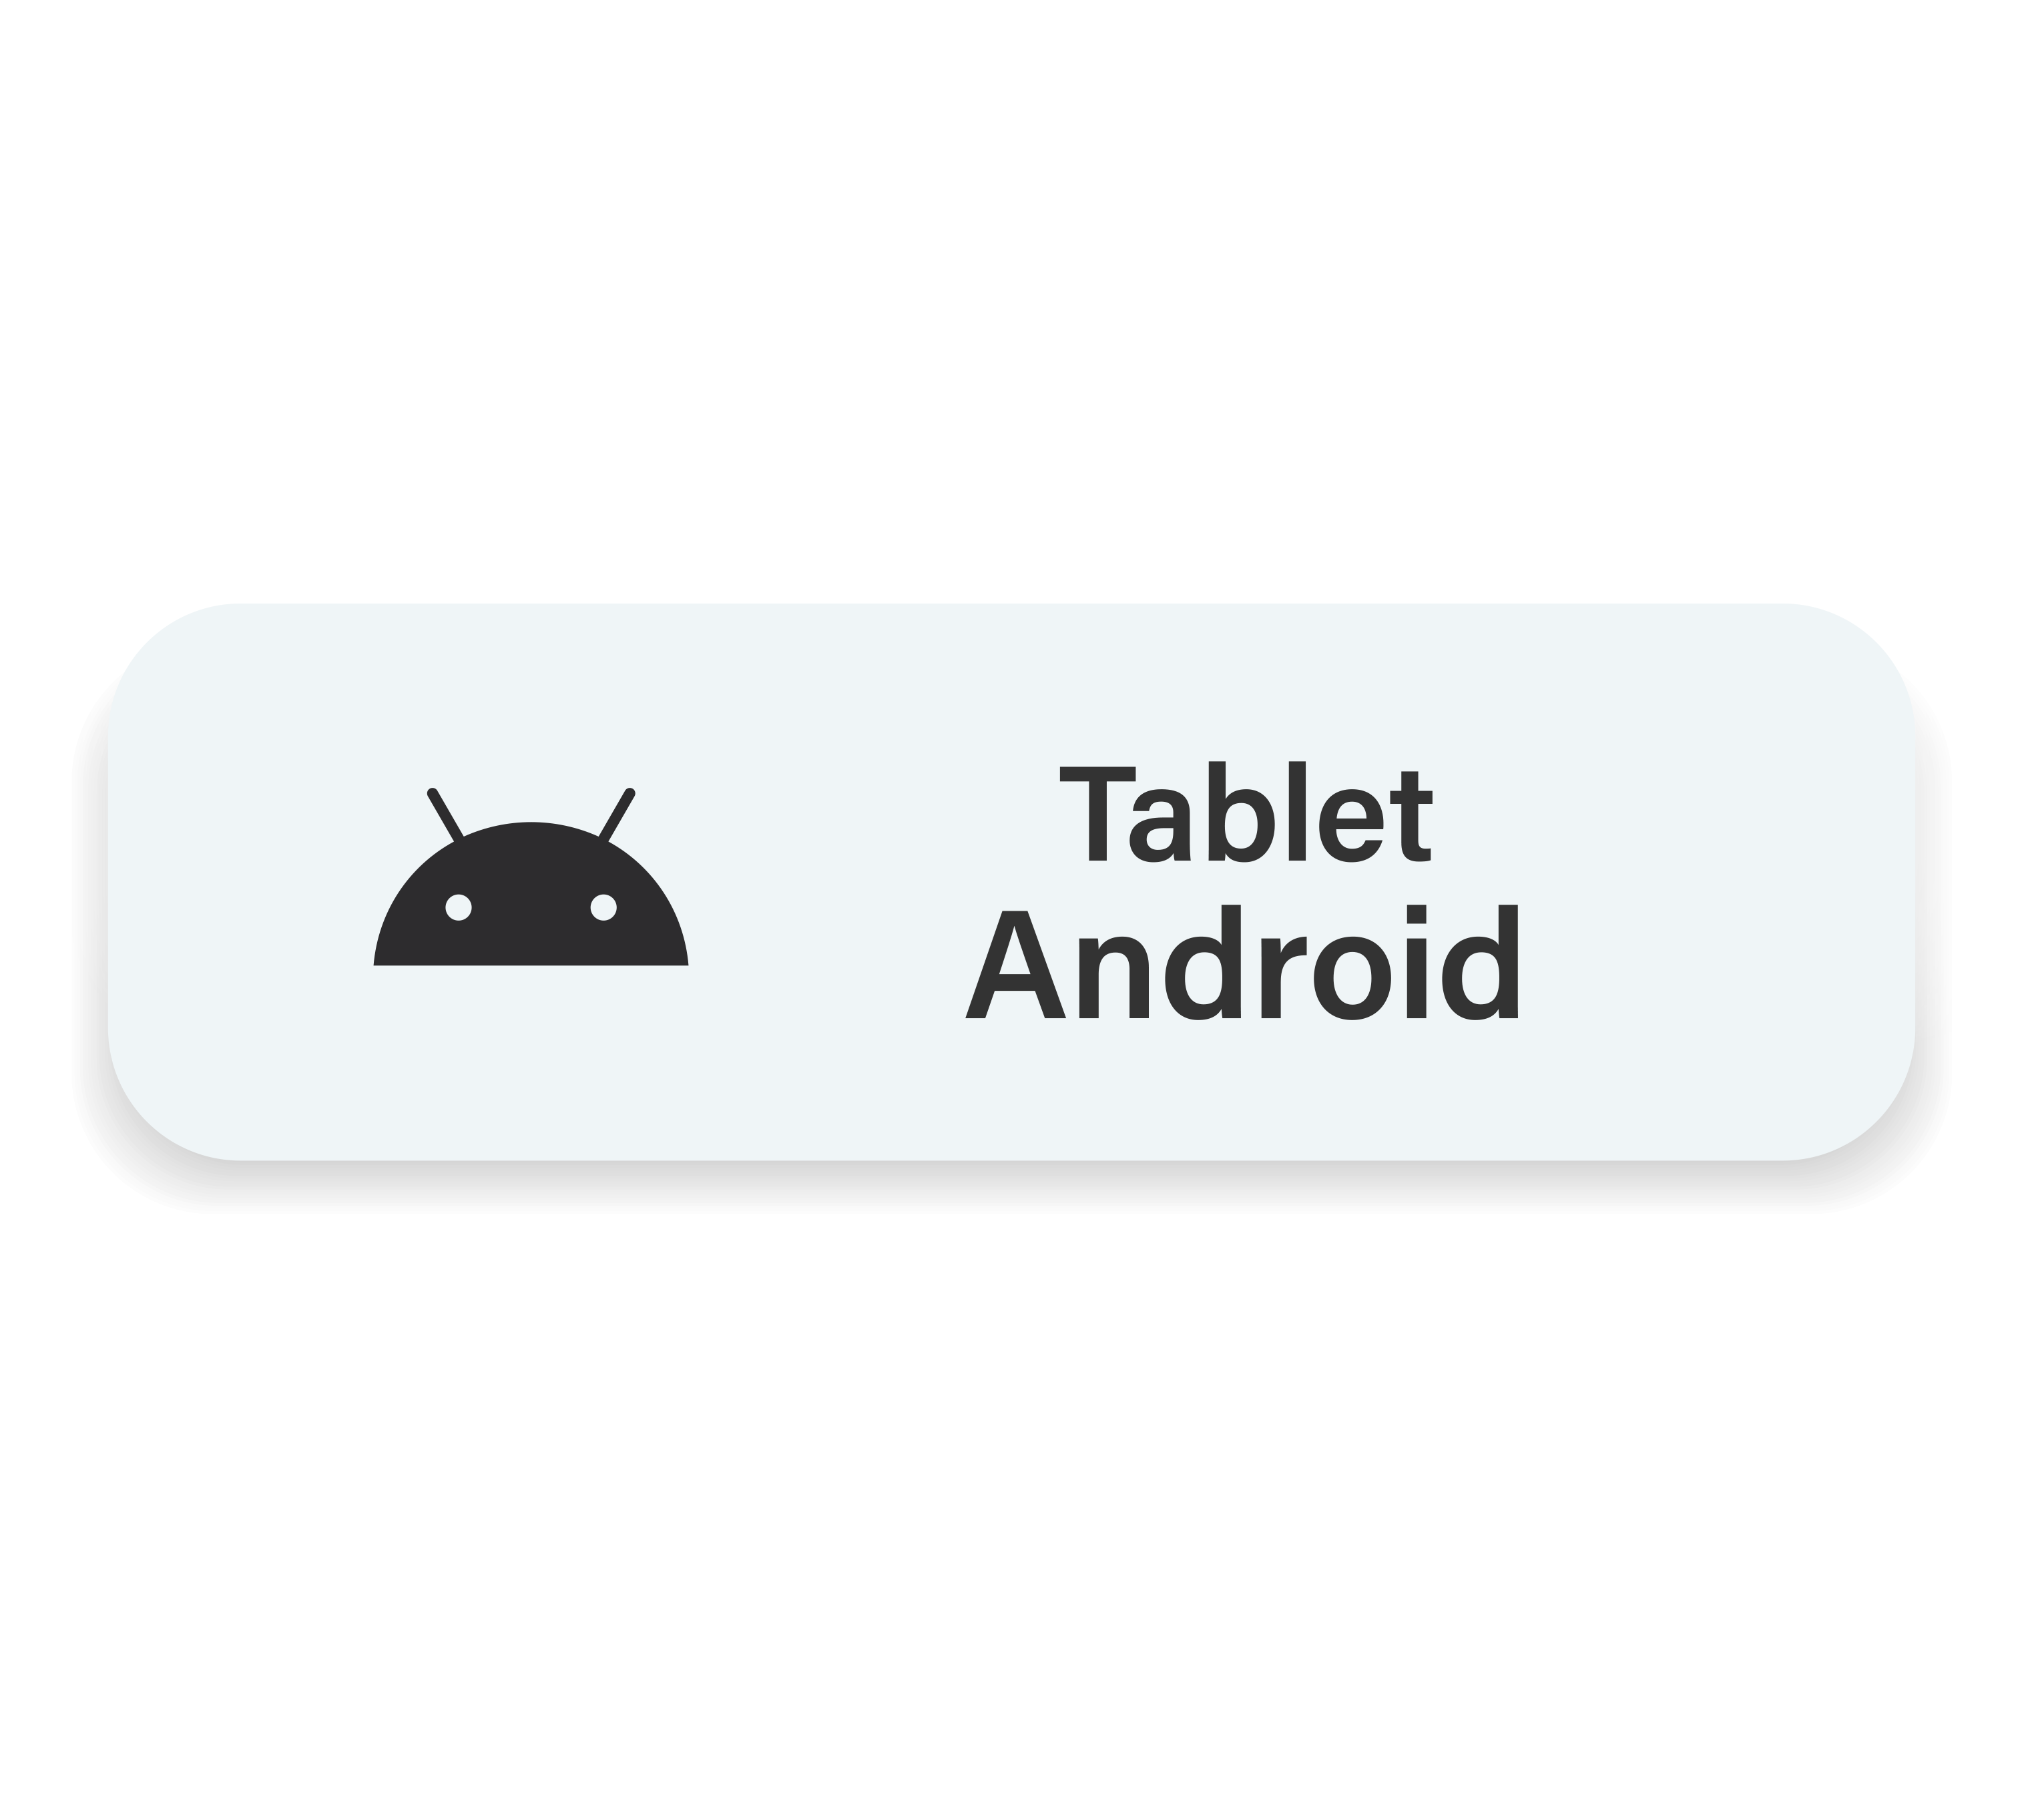 Tablet Android Tablet Samsung, Samsung Notes, Planner Digital, Caderno Digital, Stickers Adesivo Digital exclusivo para Tablet Android Samsung